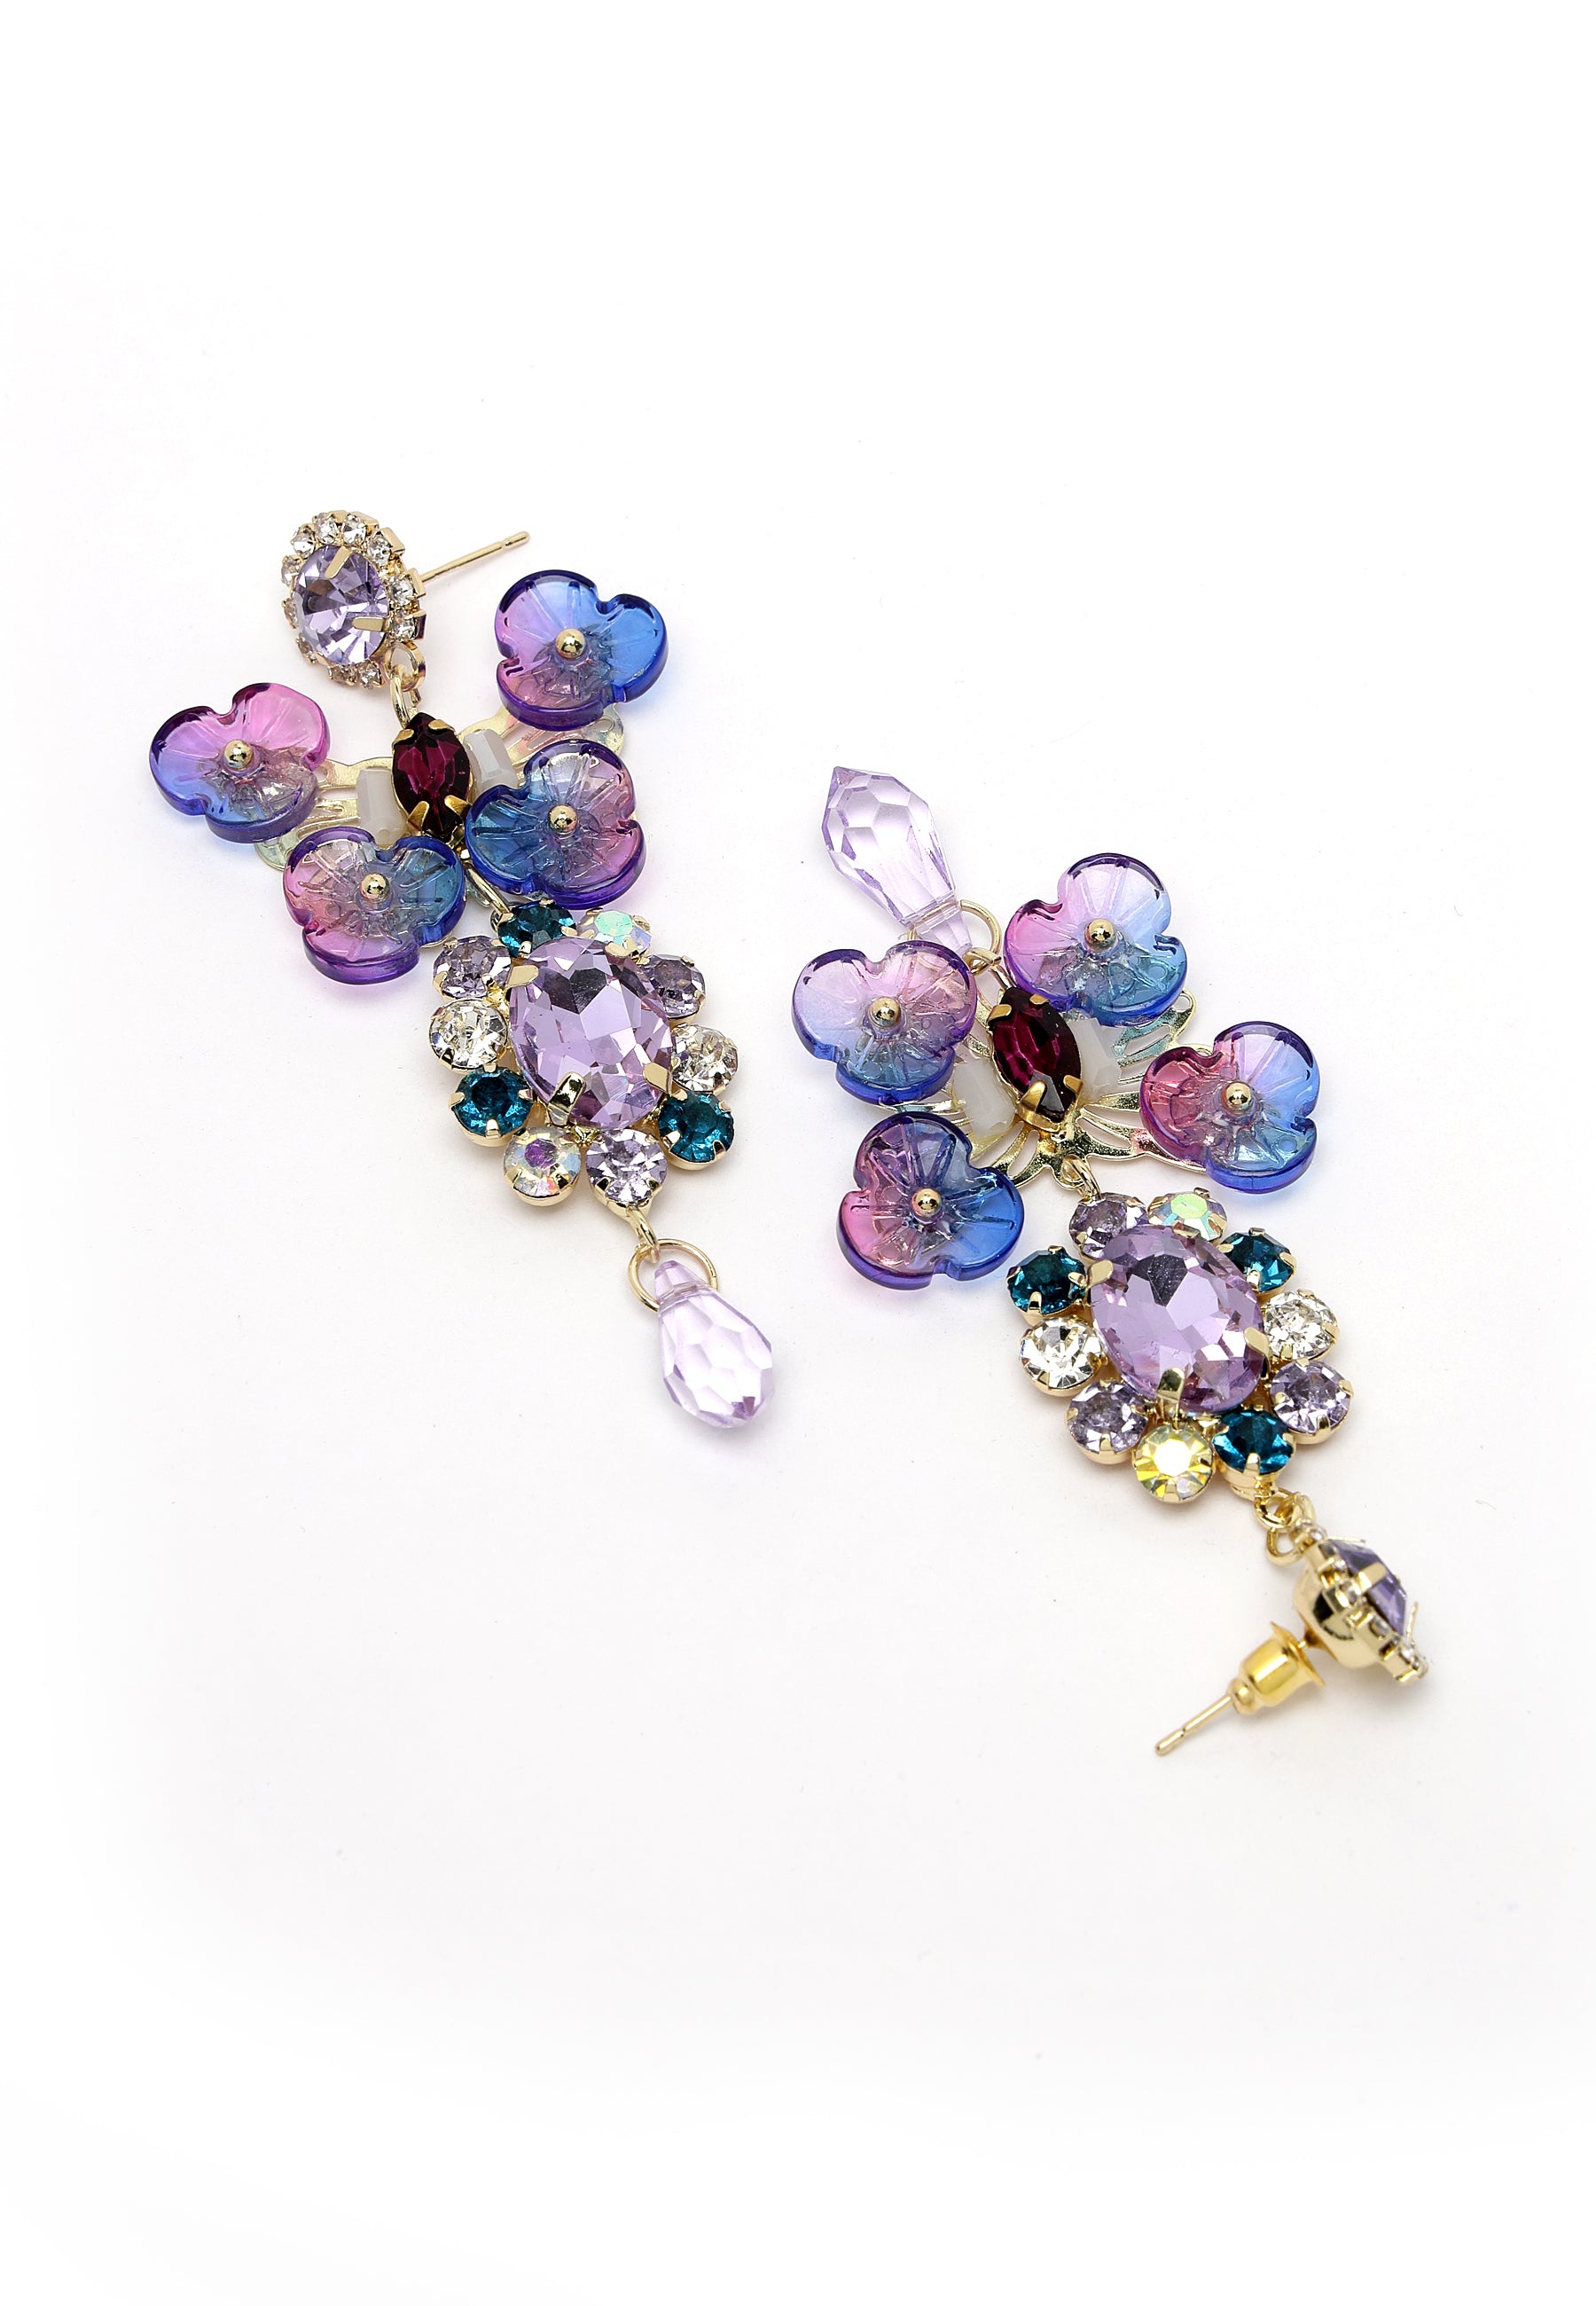 Multi-Colored Floral Waterdrop Crystal Earrings